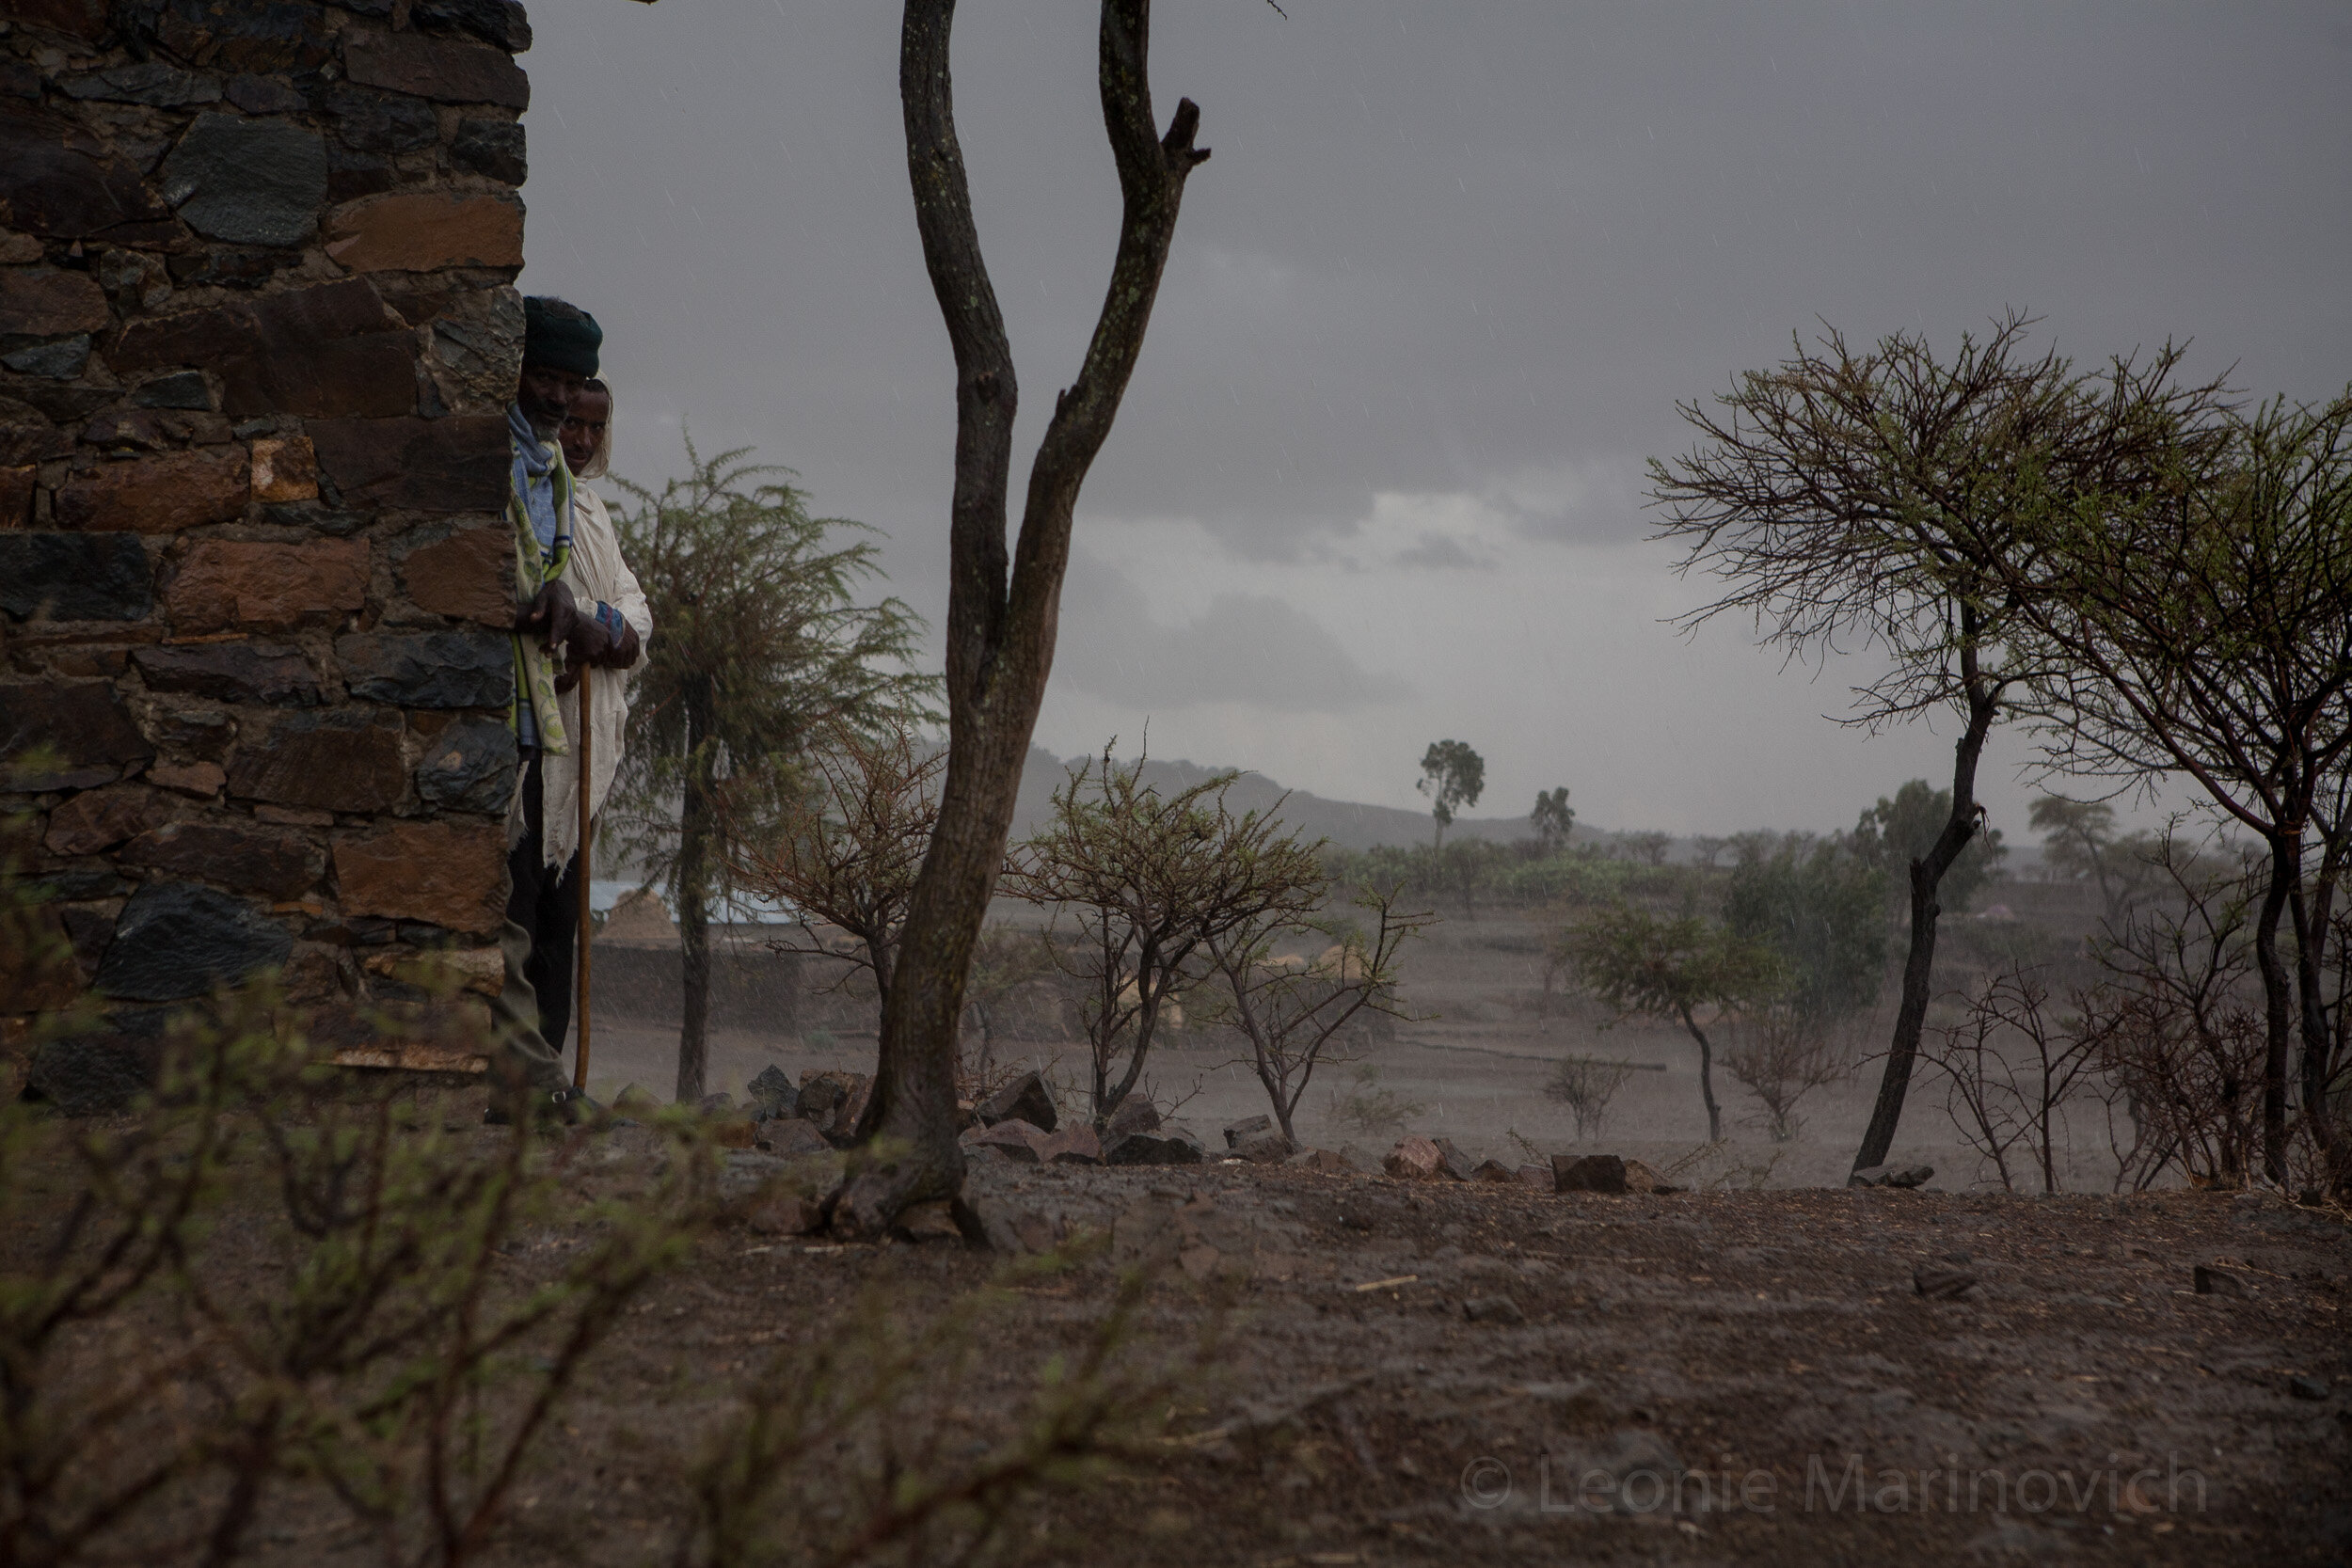  April 2010, Hawzen Woreda, Tigray, Ethiopia. The spring rains finally arrive. 